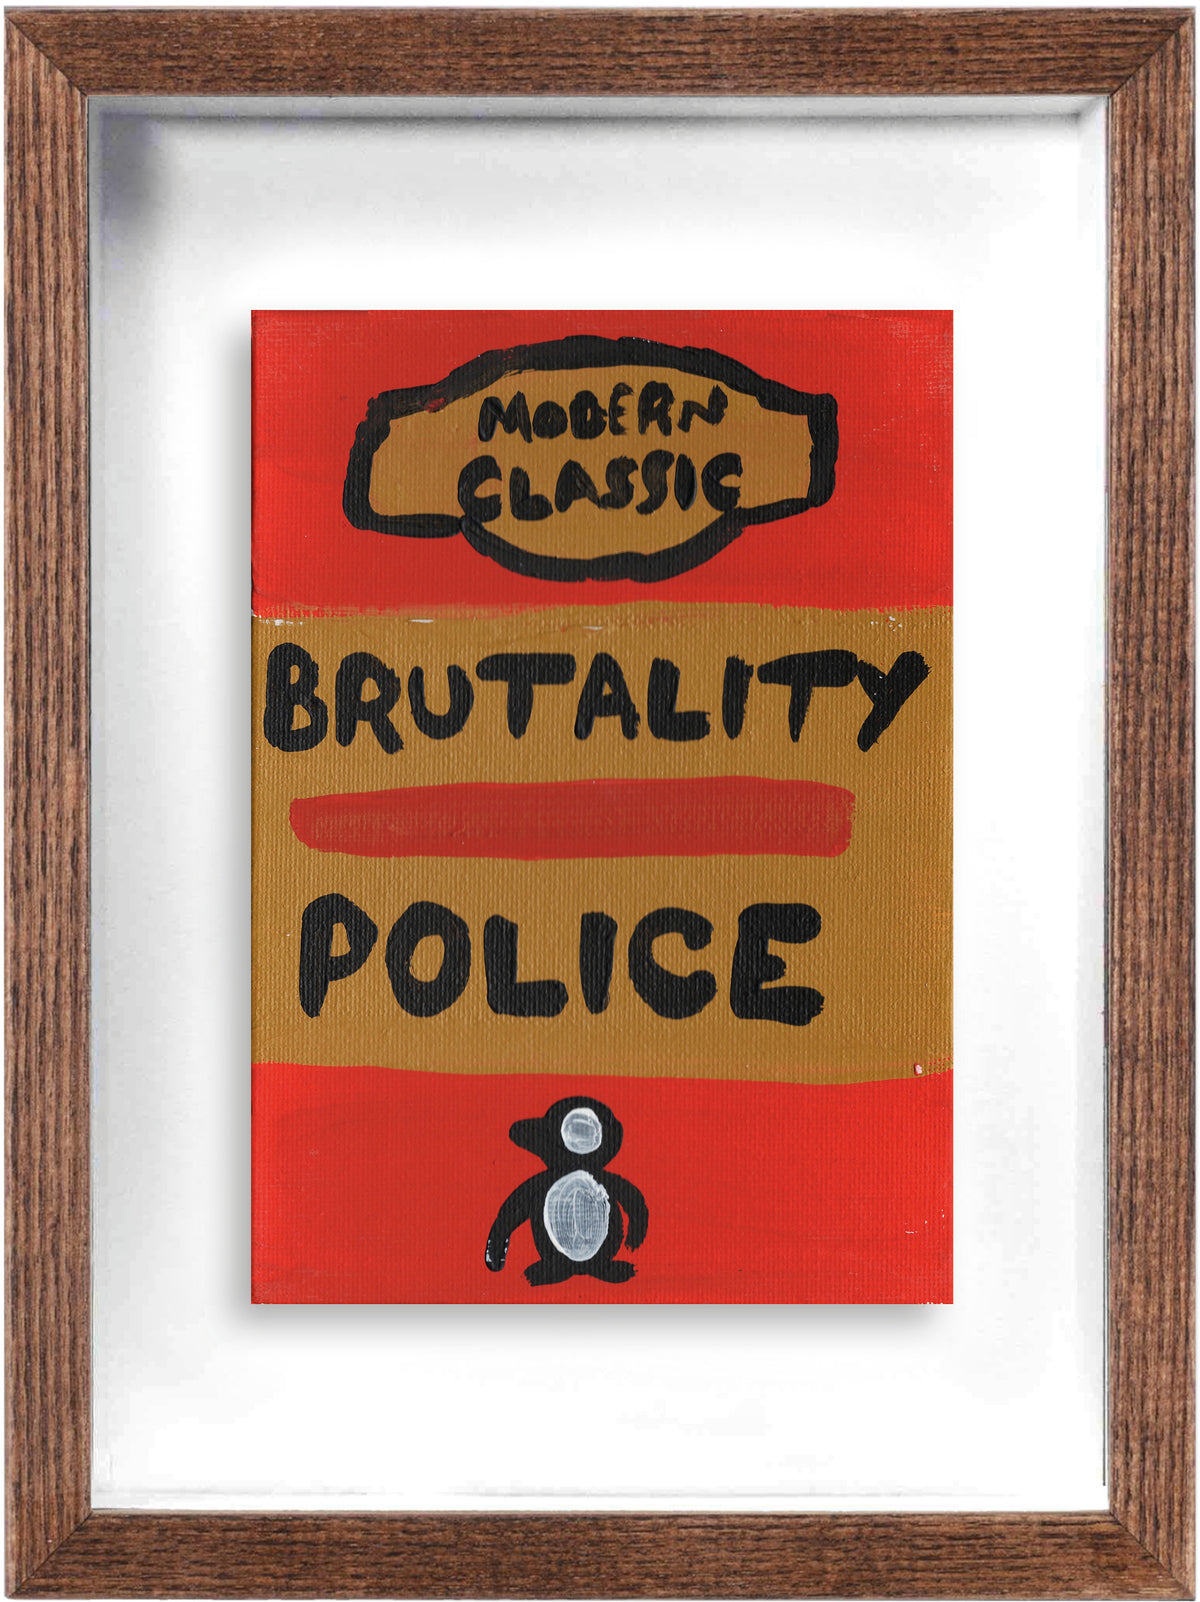 Brutality Police (Framed)